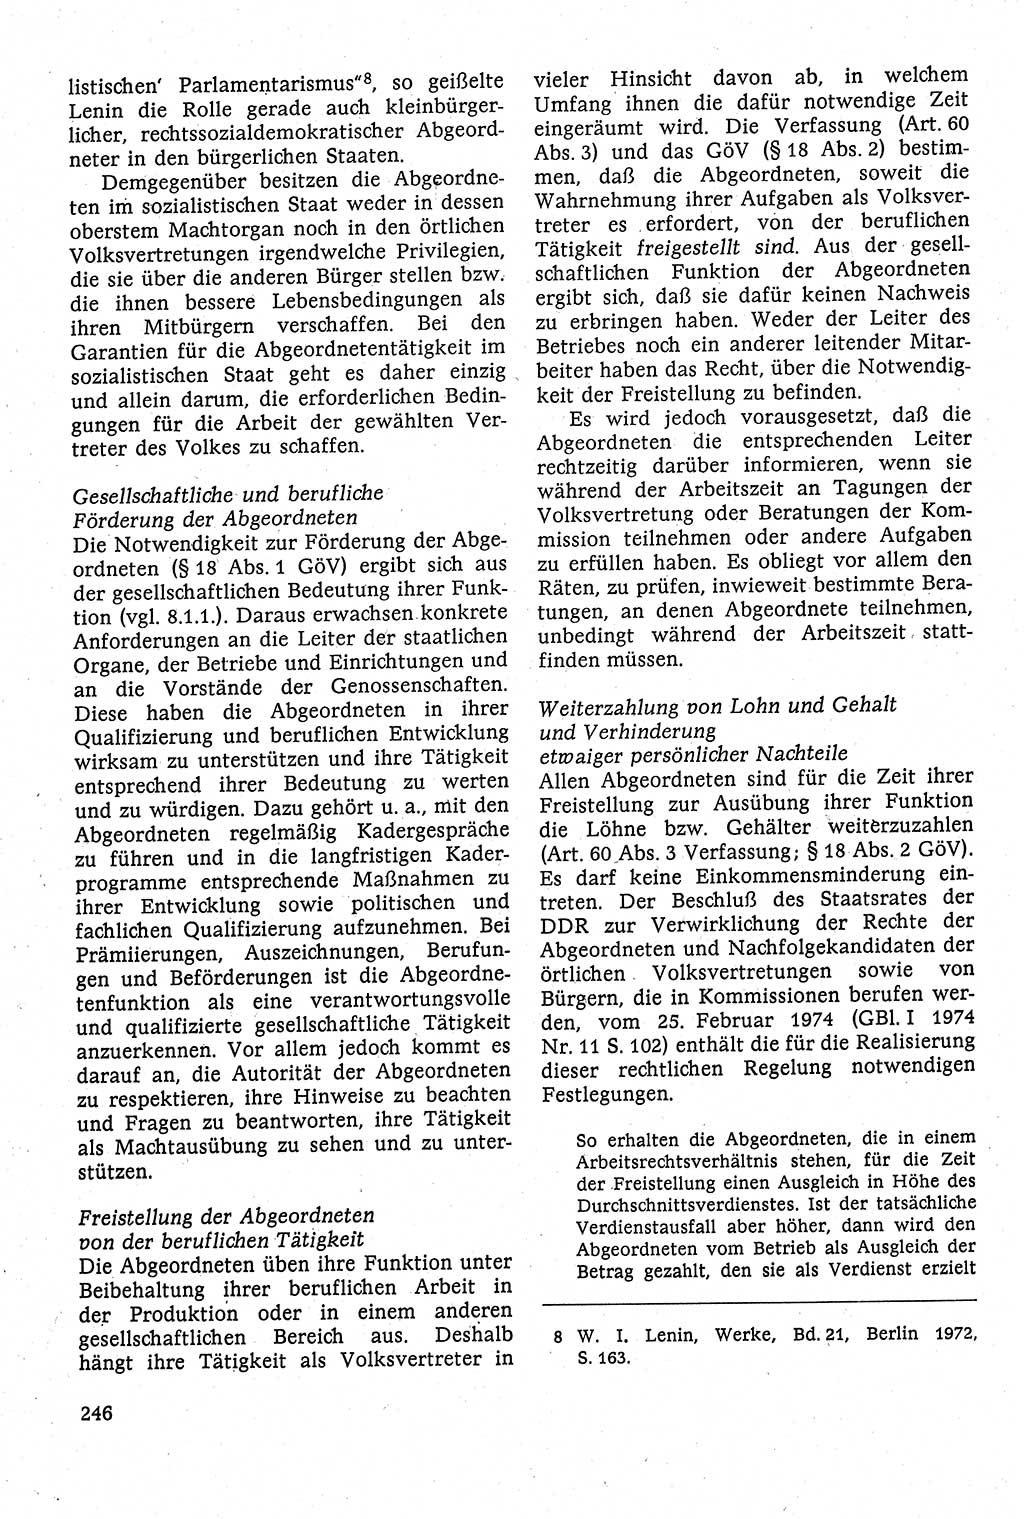 Staatsrecht der DDR [Deutsche Demokratische Republik (DDR)], Lehrbuch 1984, Seite 246 (St.-R. DDR Lb. 1984, S. 246)